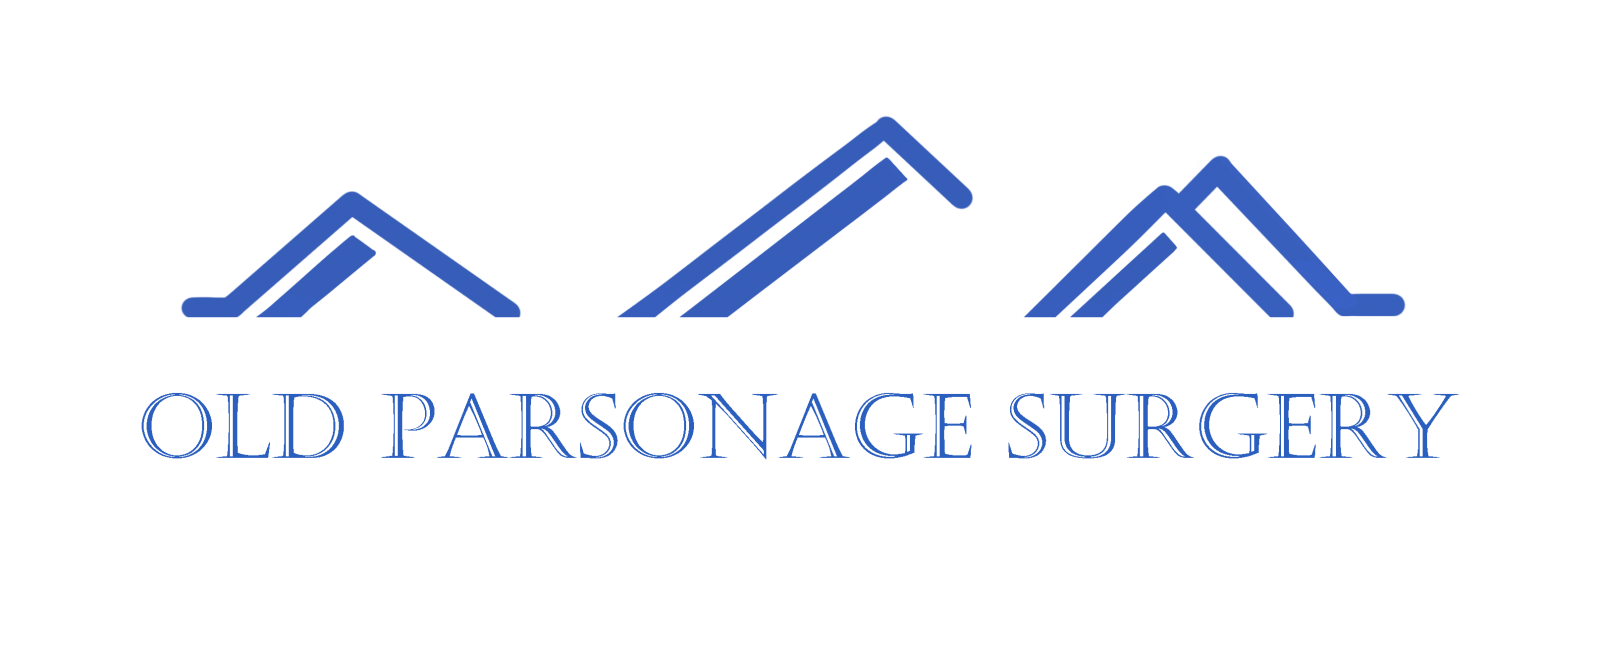 Old Parsonage Surgery logo